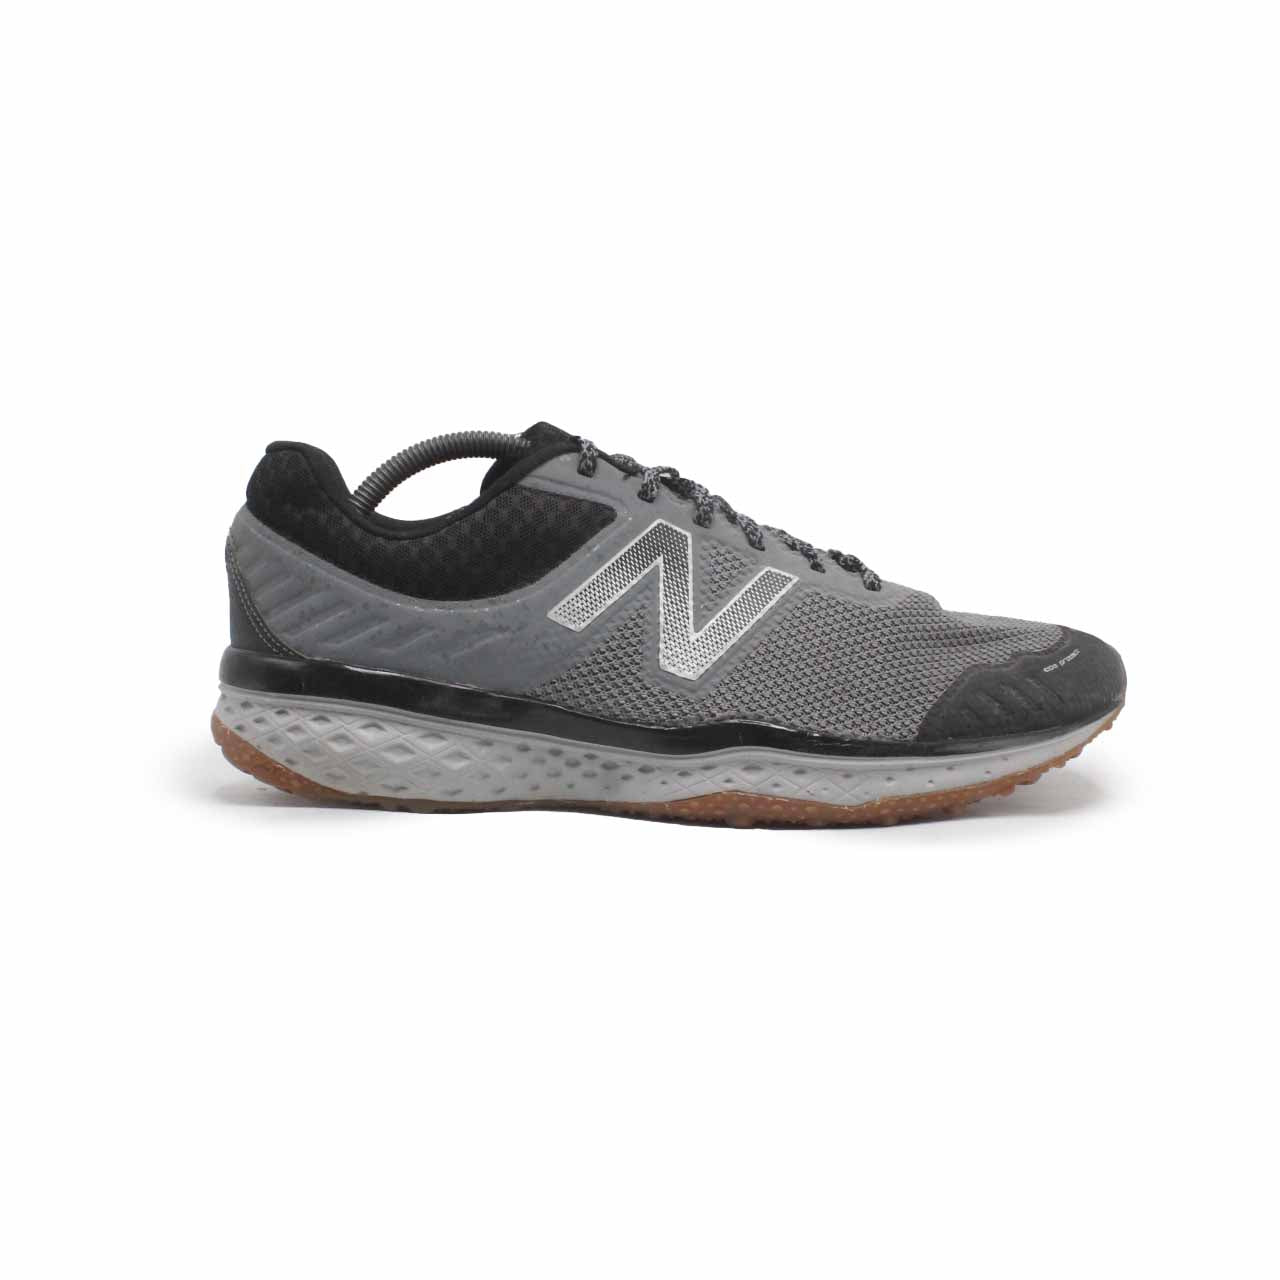 New Balance 620 Running Shoe